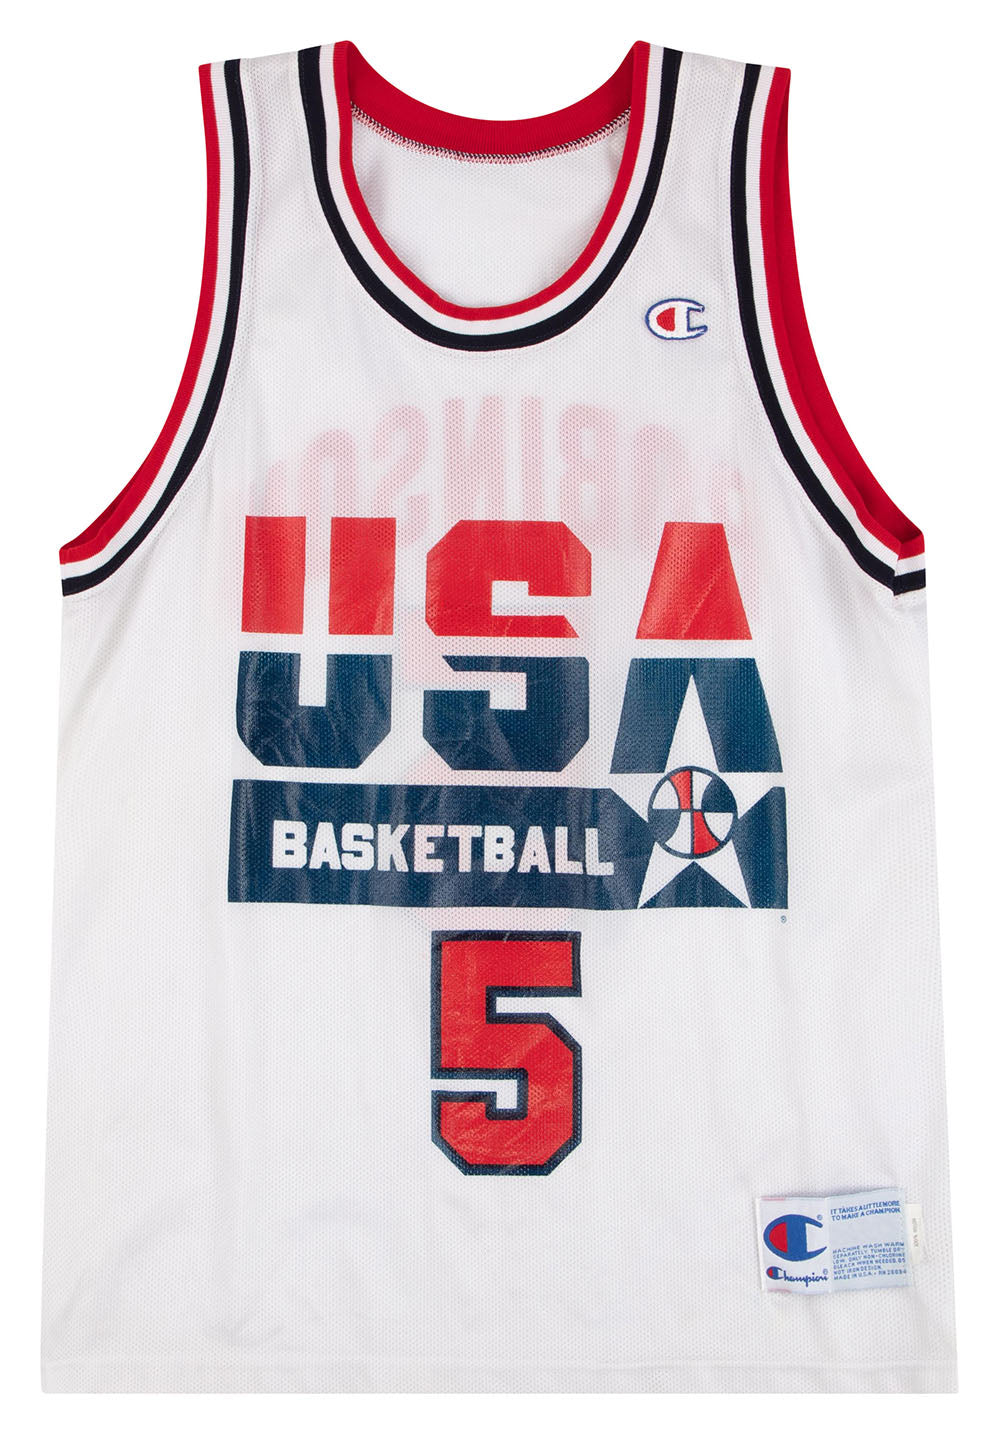 Derrick Rose - Olympic Jersey  Jersey, Usa dream team, Basketball jersey